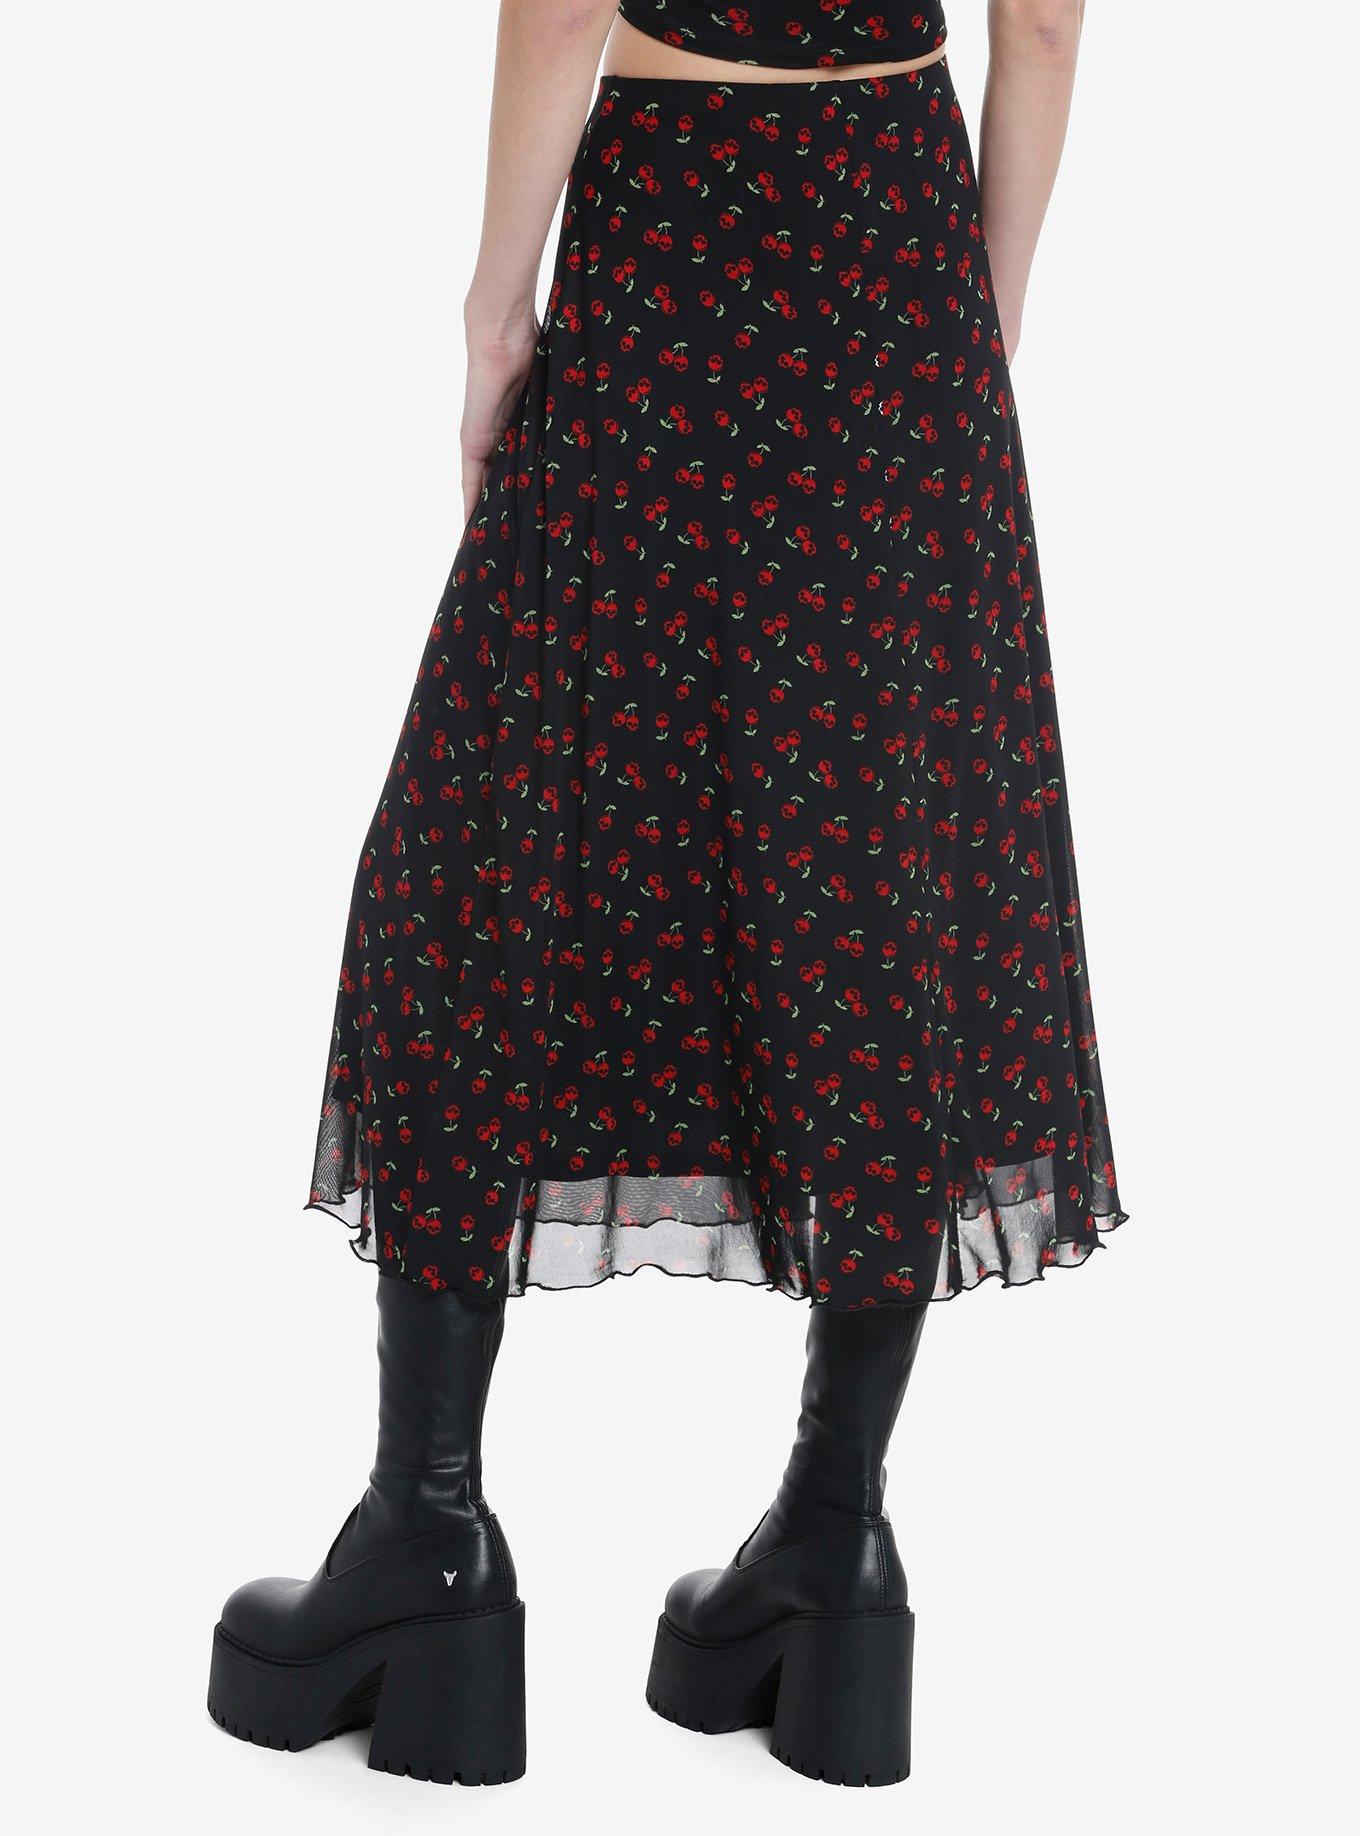 Social Collision Skull Cherry Midi Skirt, RED, alternate